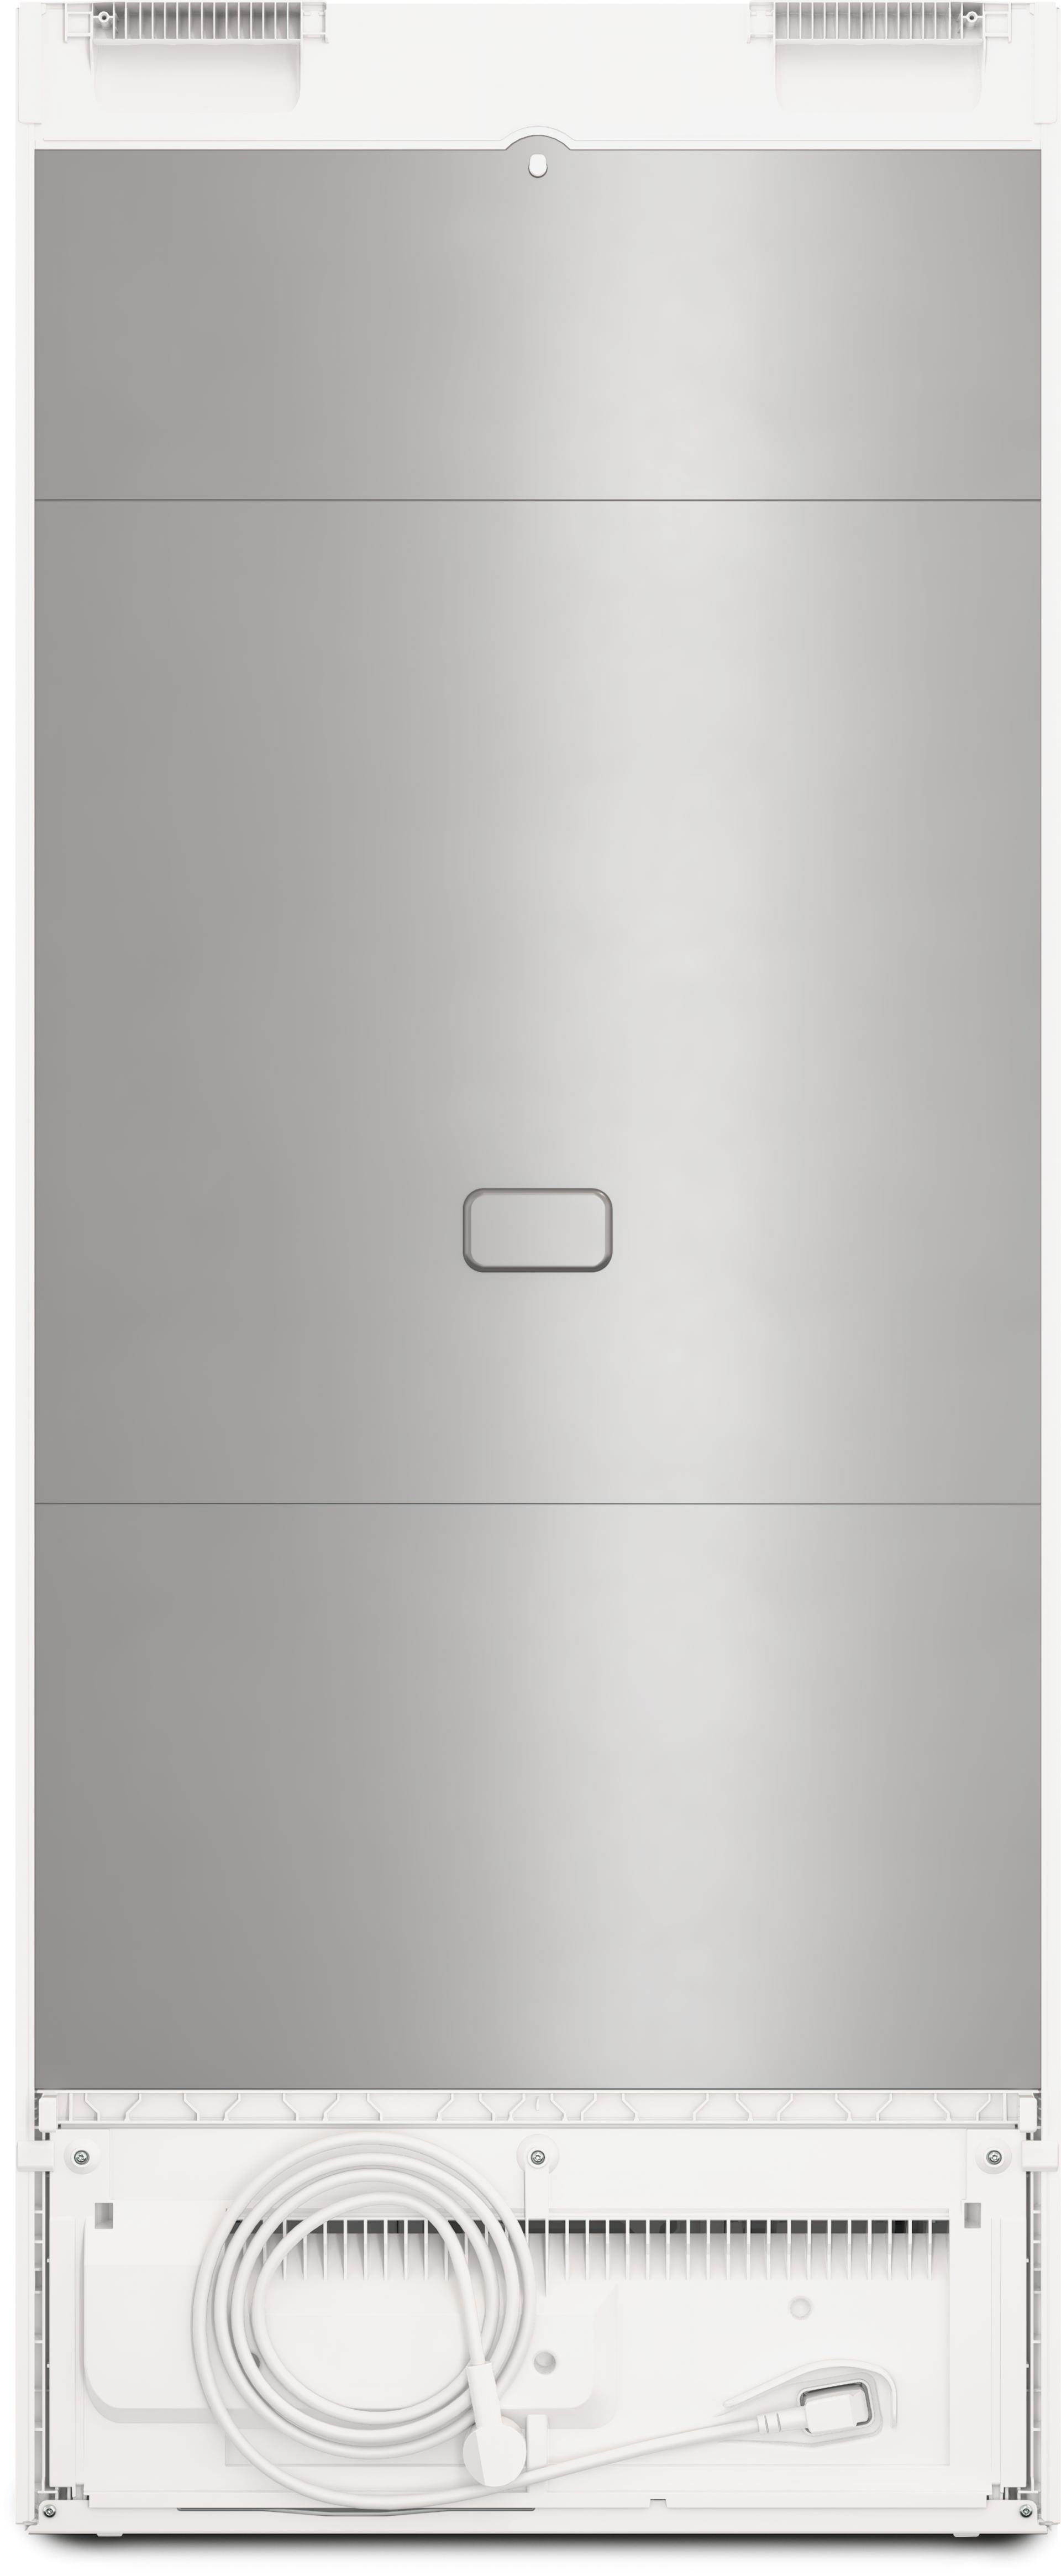 Refrigeration - FN 4322 E White - 4